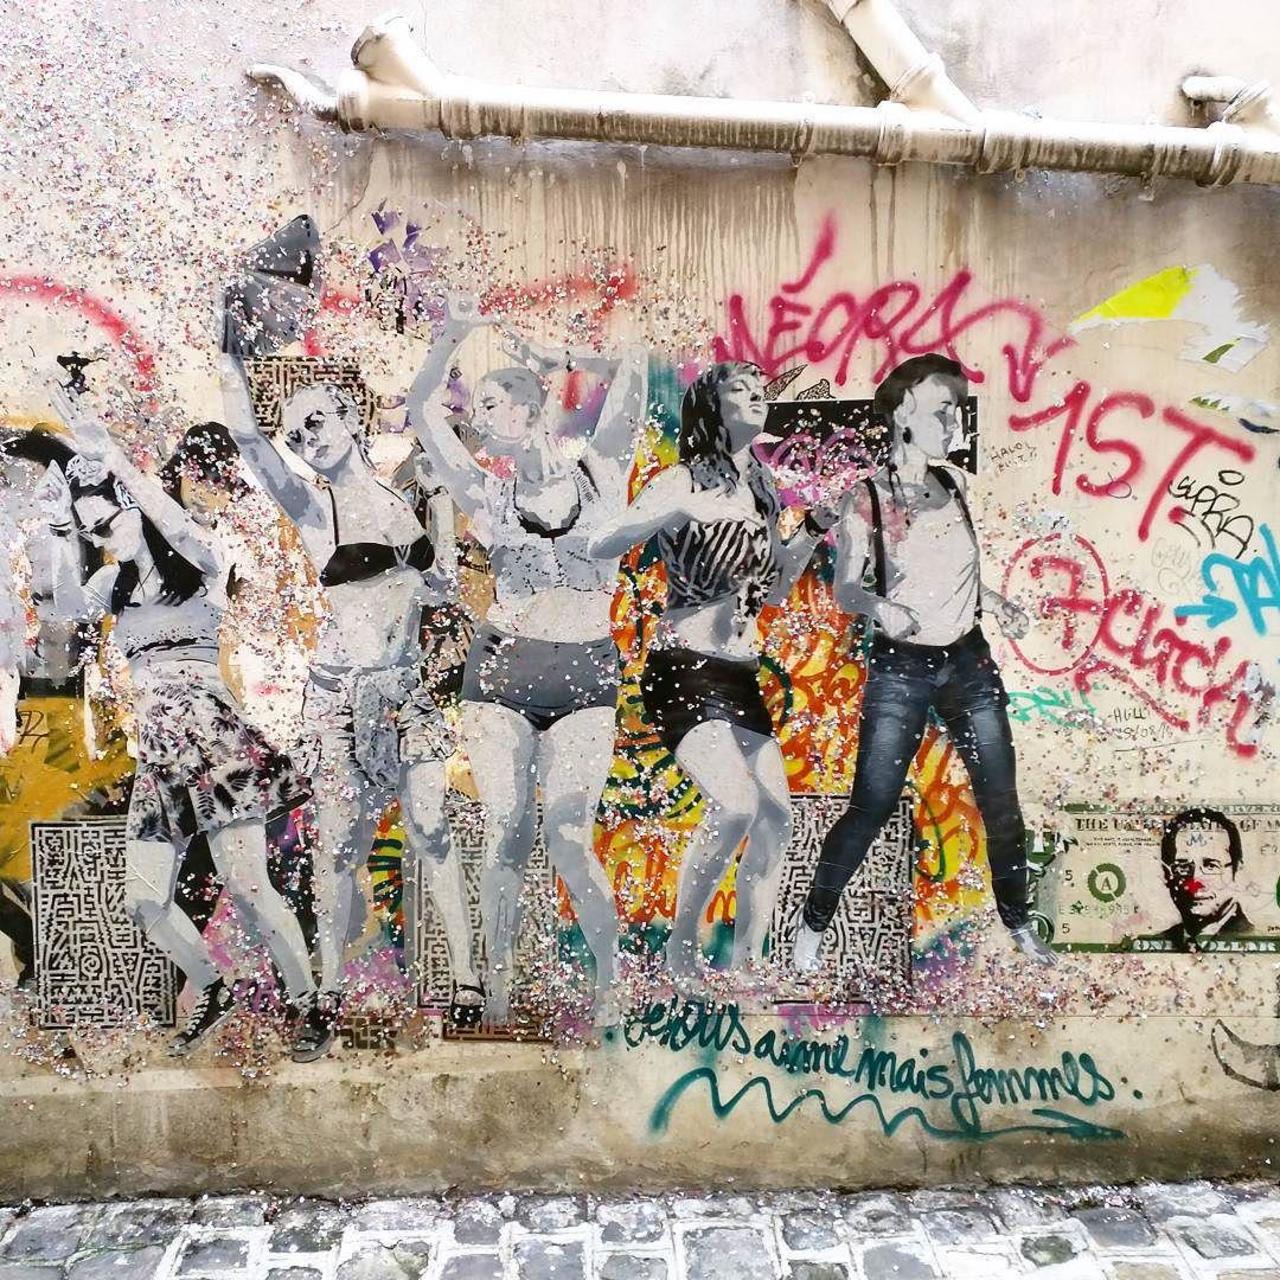 #Paris #graffiti photo by @alphaquadra http://ift.tt/1M8OQhn #StreetArt http://t.co/zGJV3X5Xow